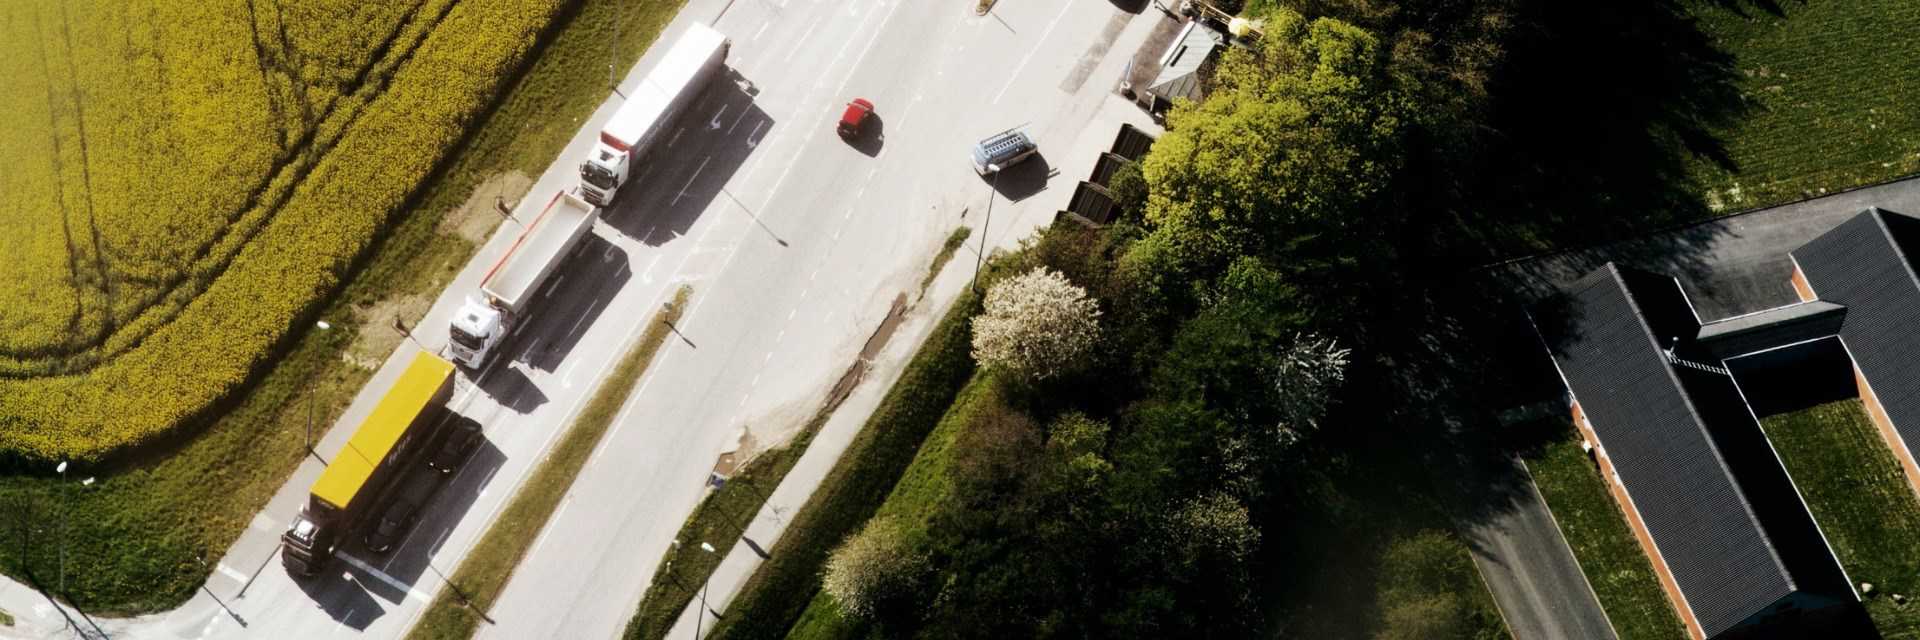 Luftfoto af en vej med tre lastbiler og fire personbiler. På begge siden af vejen er der grønne områder.